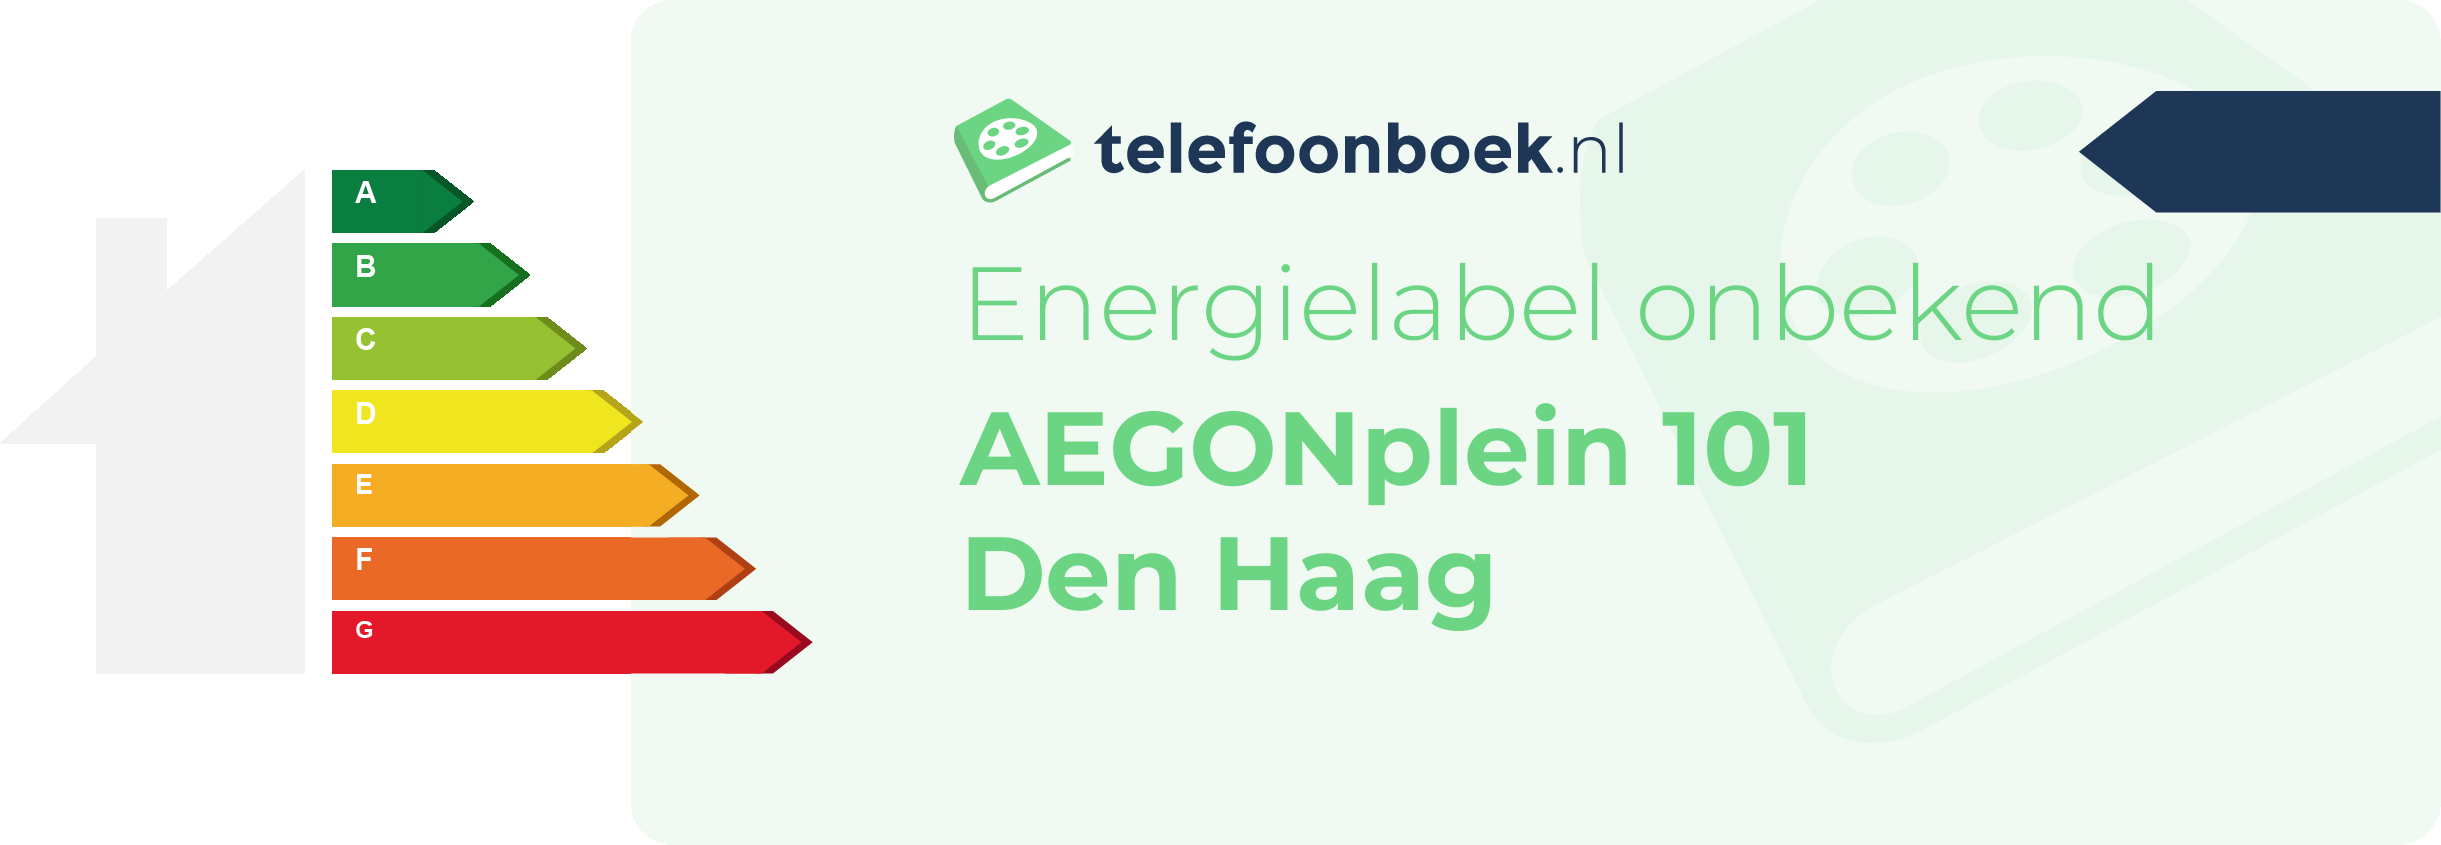 Energielabel AEGONplein 101 Den Haag